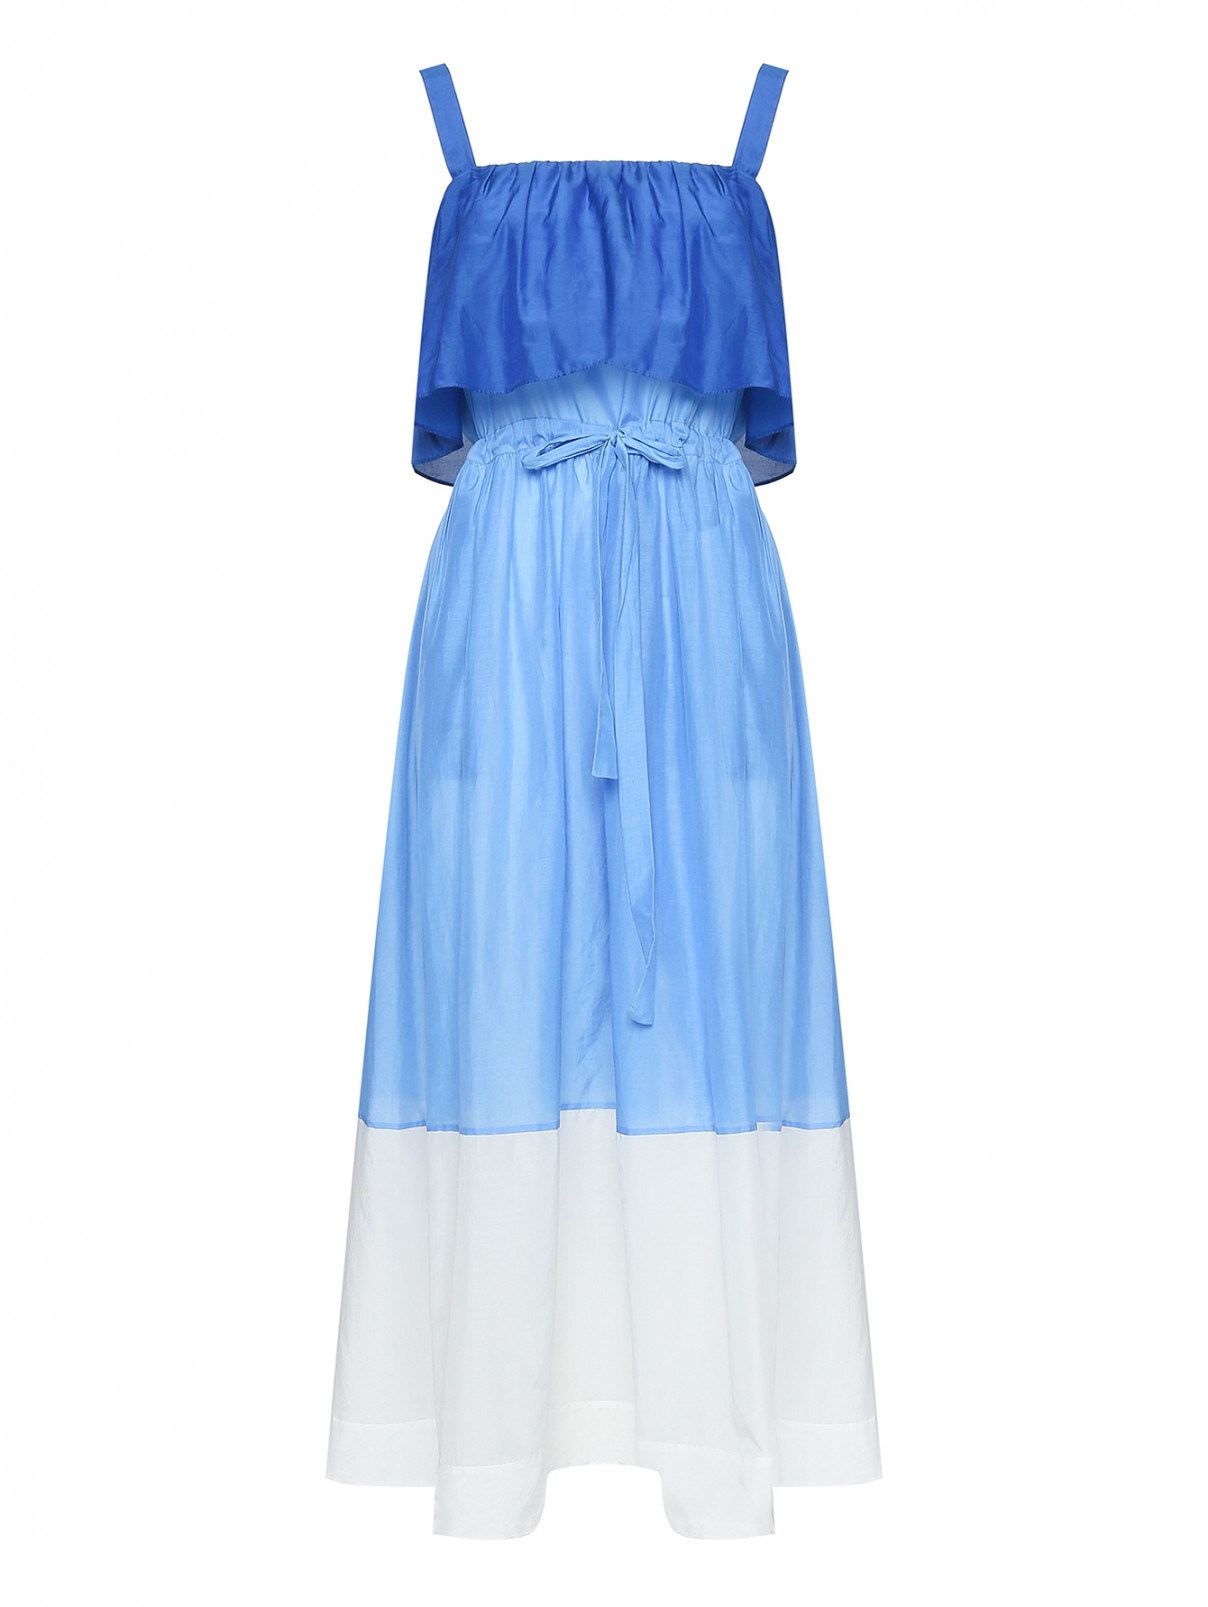 Платье из хлопка и шелка DVF  –  Общий вид  – Цвет:  Синий